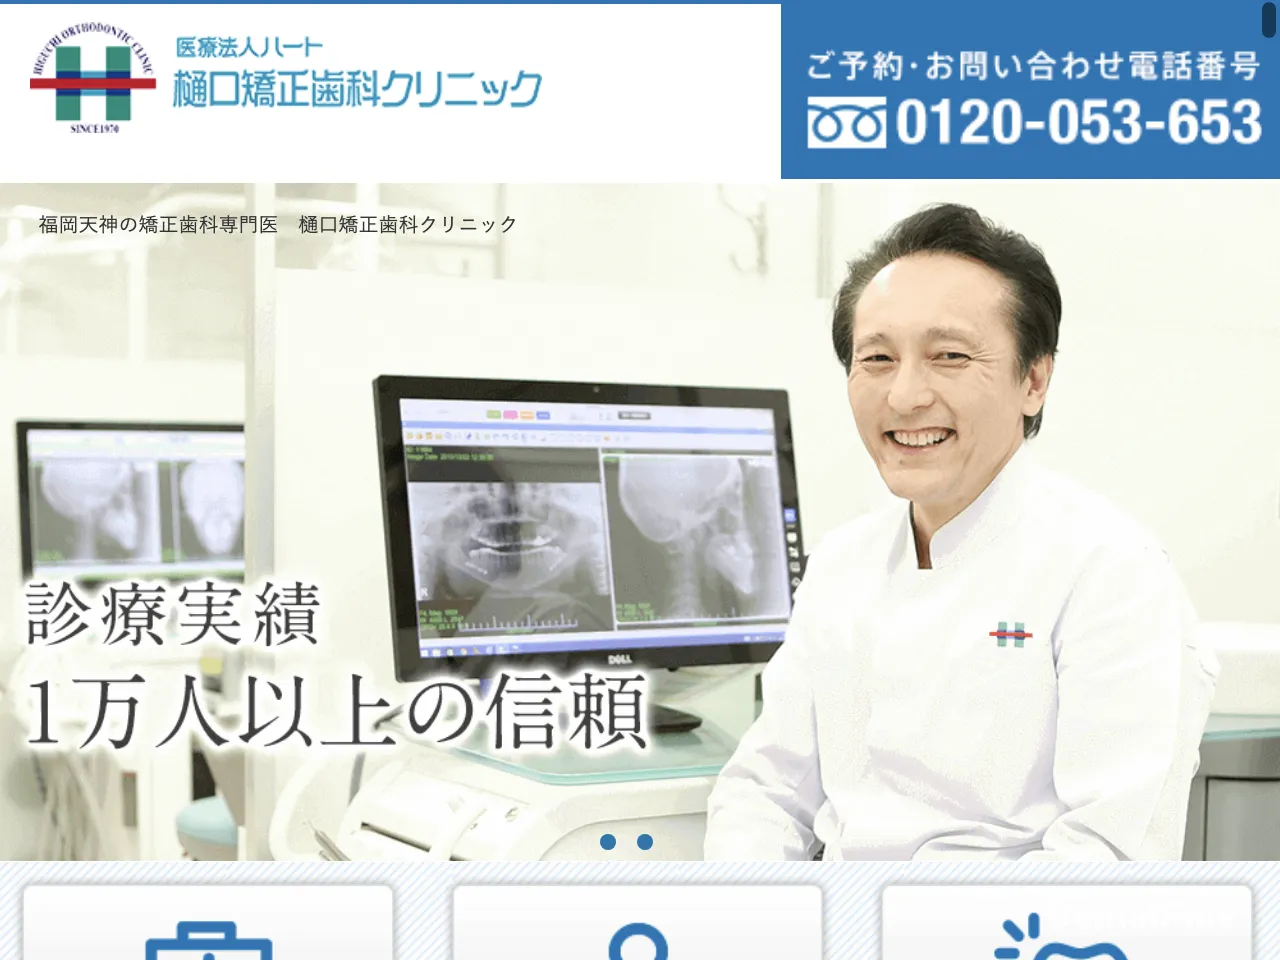 医療法人ハート 樋口矯正歯科クリニックのウェブサイト